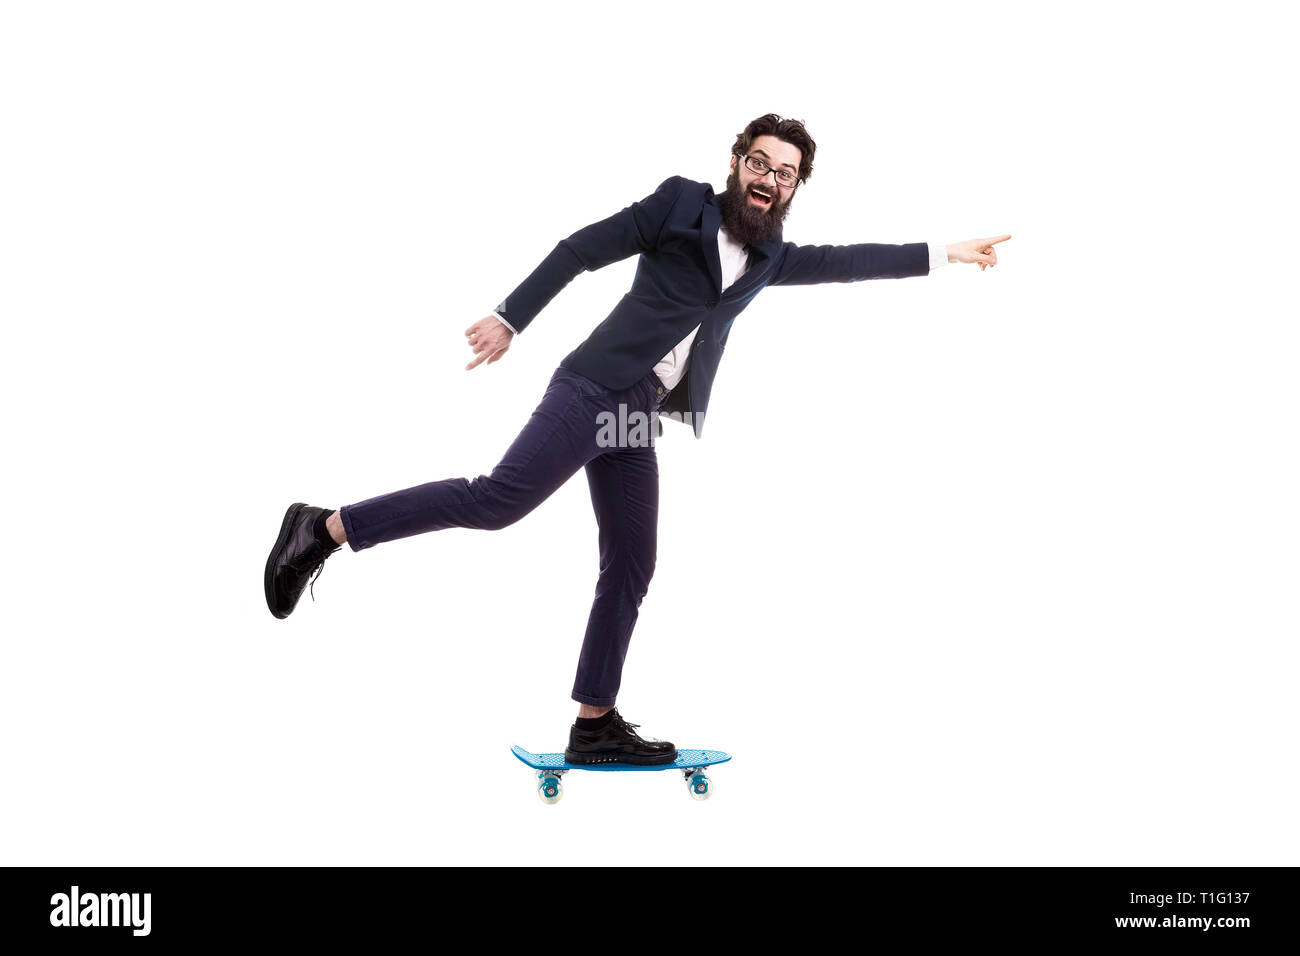 Homme barbu monté sur un skate, isolé sur fond blanc Banque D'Images